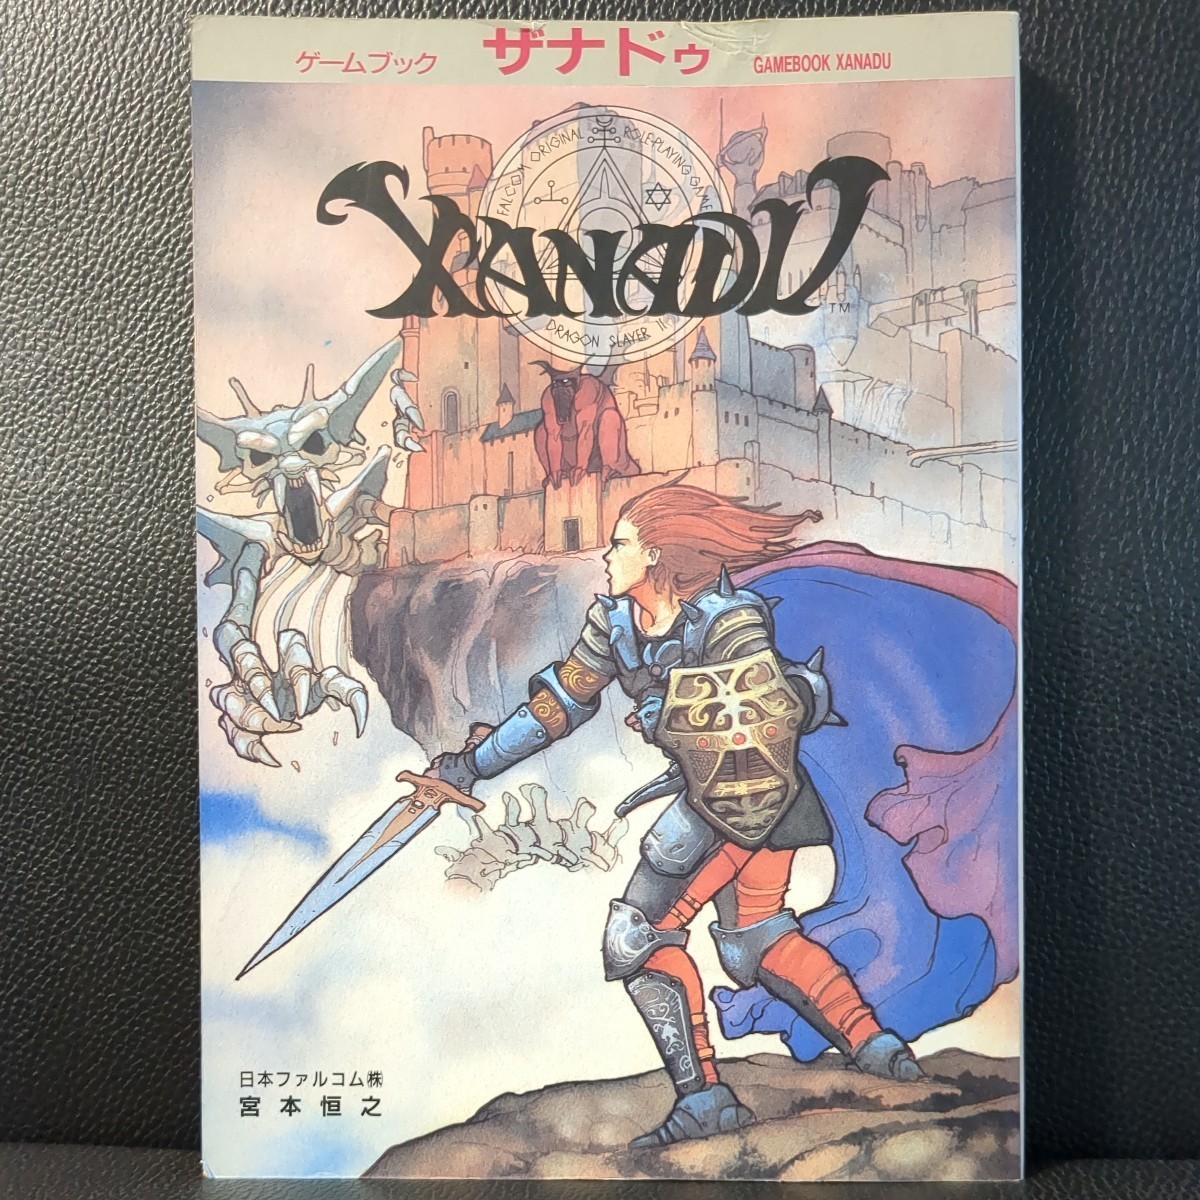 【概ね美品】ゲームブック ザナドゥ GAME BOOK XANADU 日本ファルコム Falcom 宮本恒之 JICC 1987年 PC88 PC98 X1 FM7/8 MSX Windows